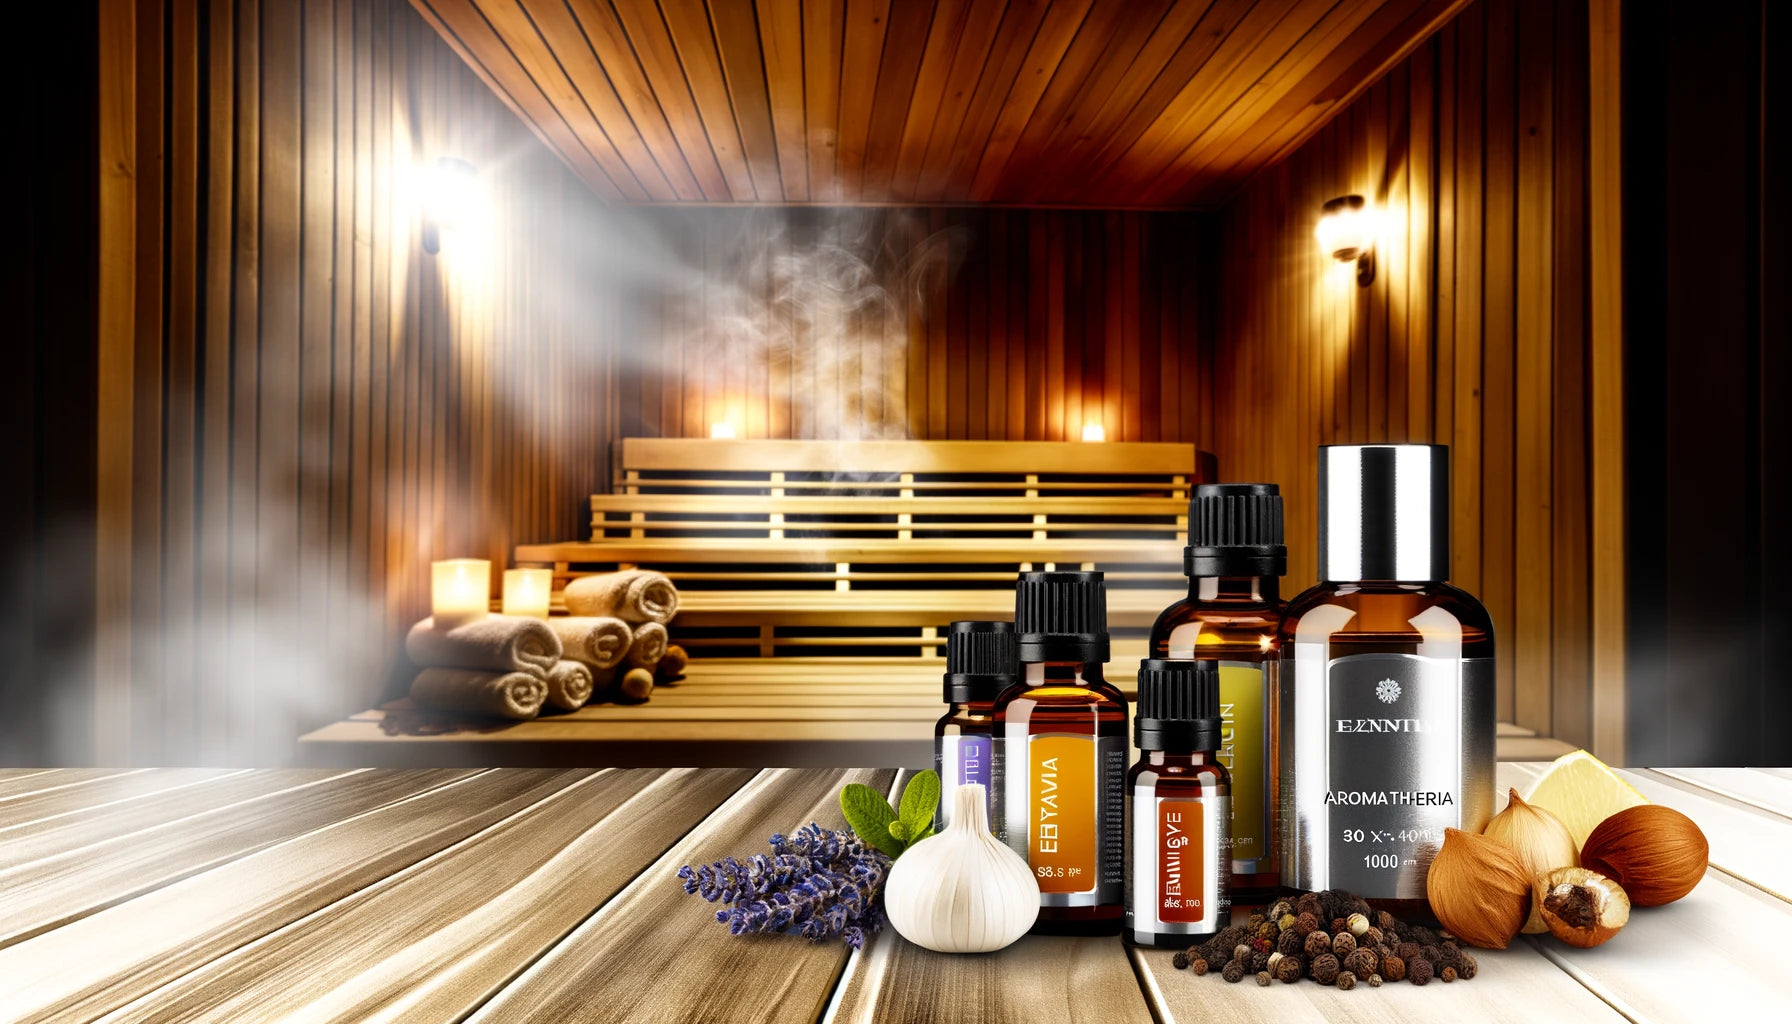 Aromatherapy in Saunas